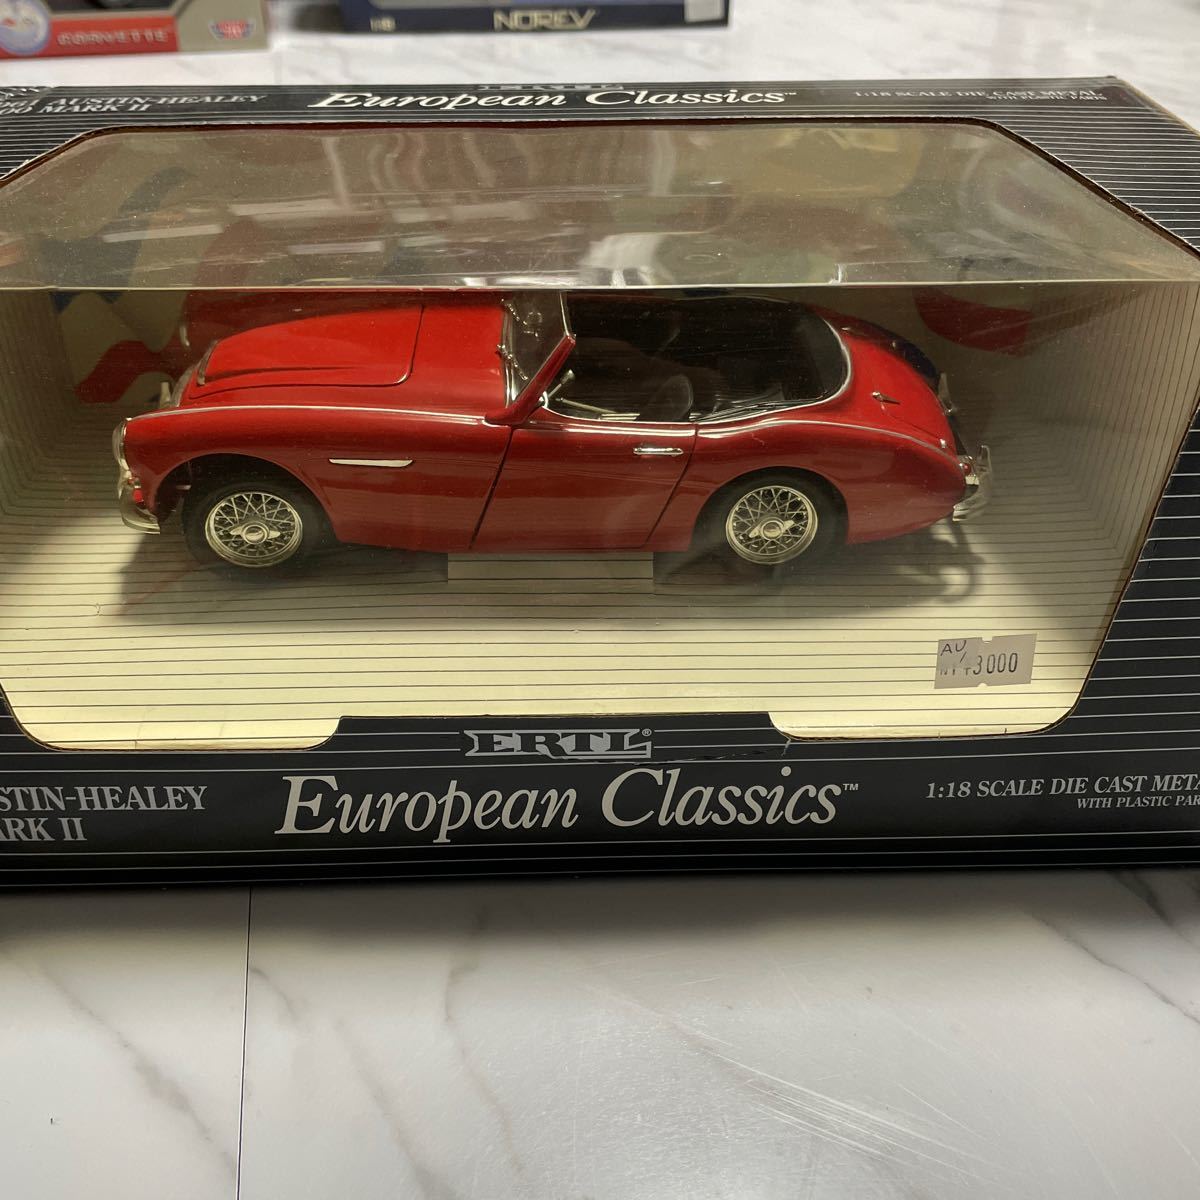 【箱付き】《1/18スケール》1961 AUSTIN-HEALEY 3000 MARK Ⅱ ERTL メタルダイキャスト ミニカー コレクション放出 European Classics